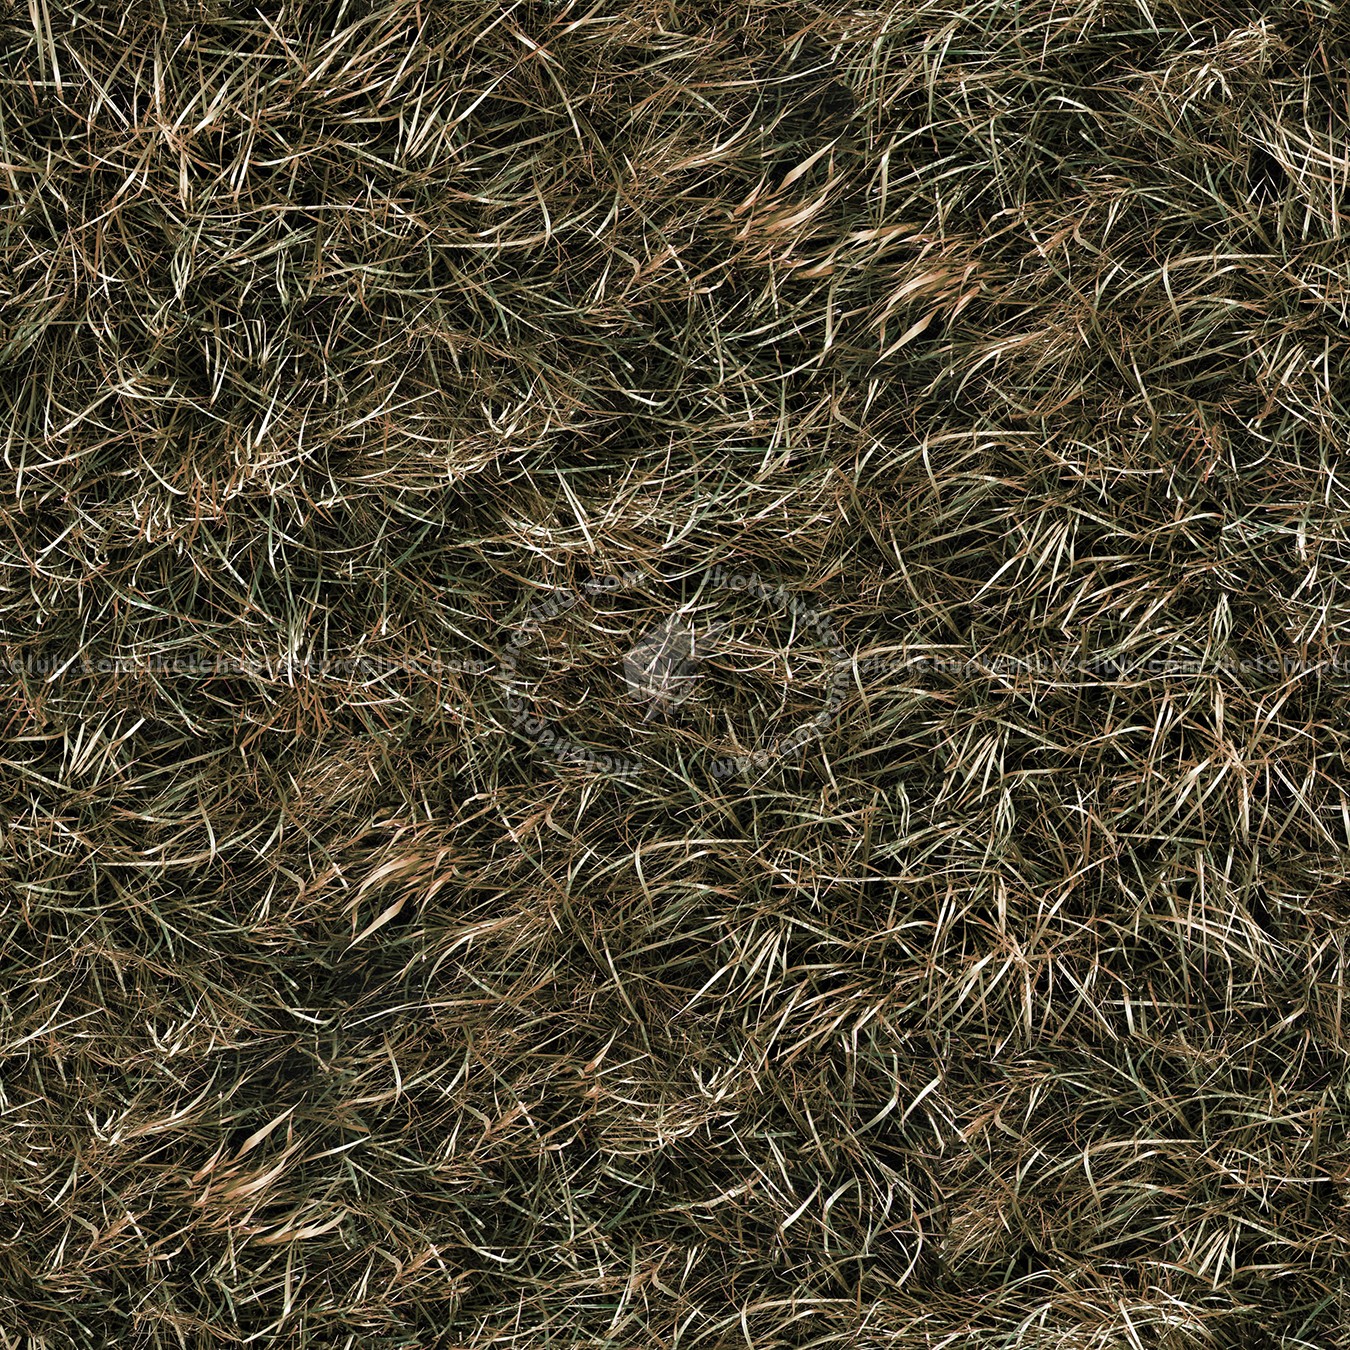 Dark Grass Texture Seamless